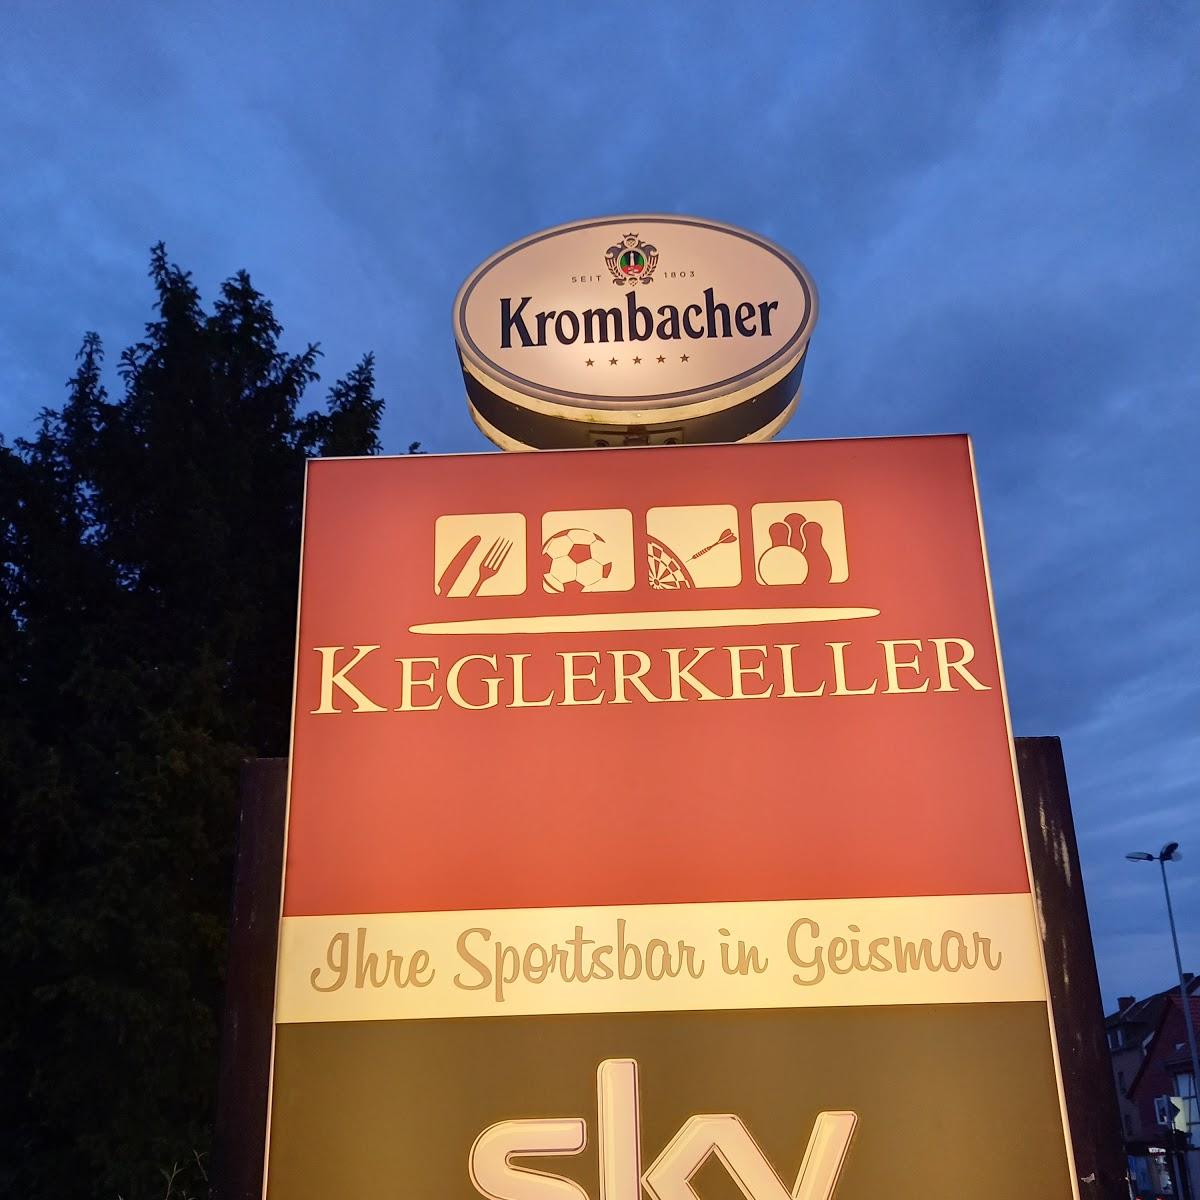 Restaurant "Keglerkeller" in Göttingen